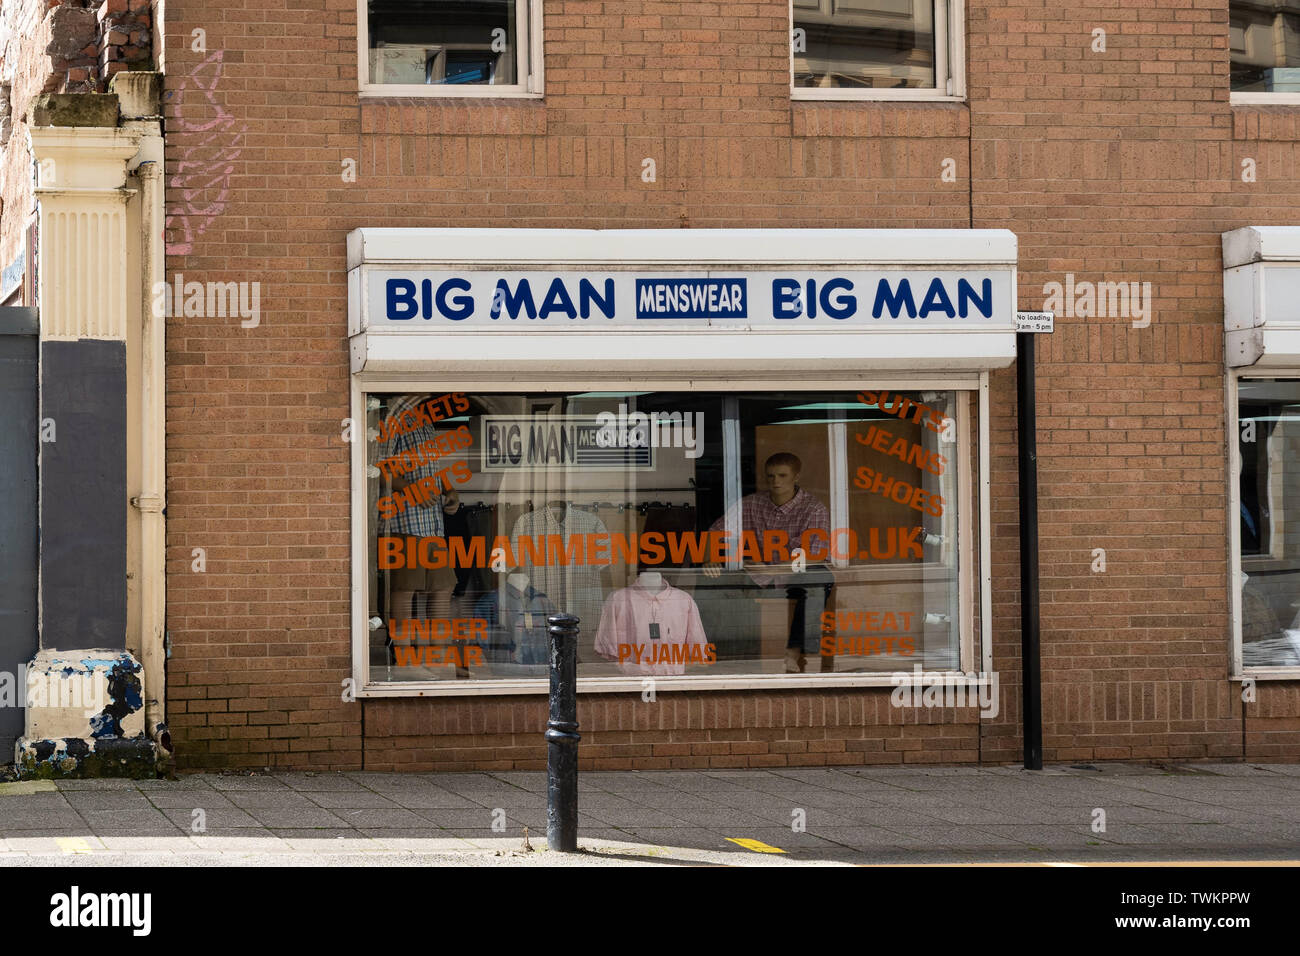 Big Man Menswear - men's large size clothing shop, Barnsley, South Yorkshire, England, UK Stock Photo